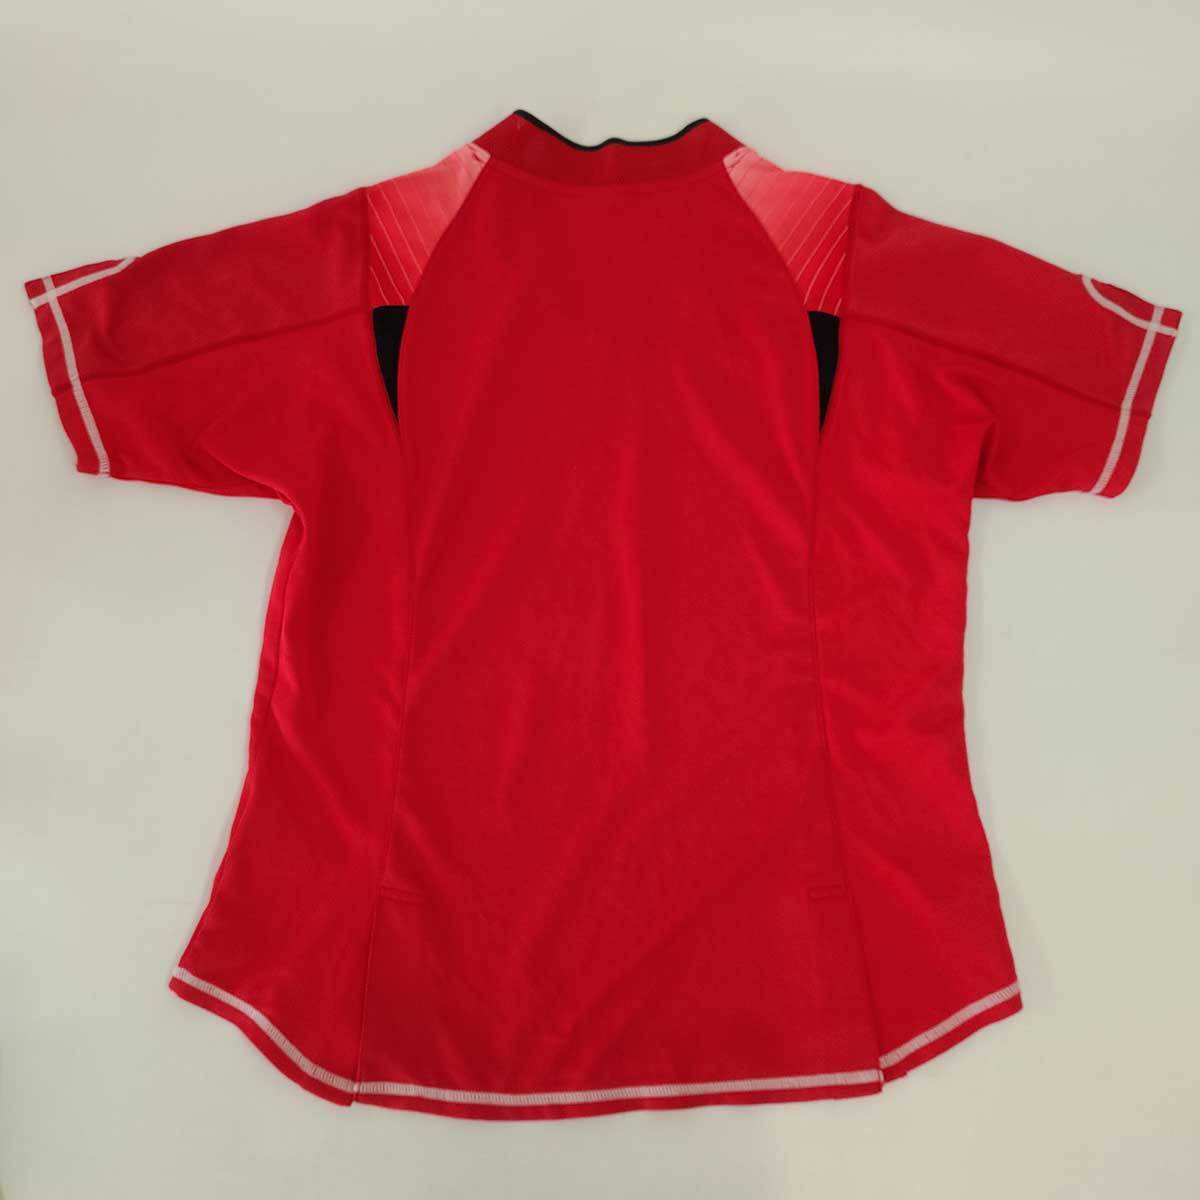 [ б/у ] Mizuno dry рубашка pra рубашка рубашка с коротким рукавом L красный женский MIZUNO спорт одежда 